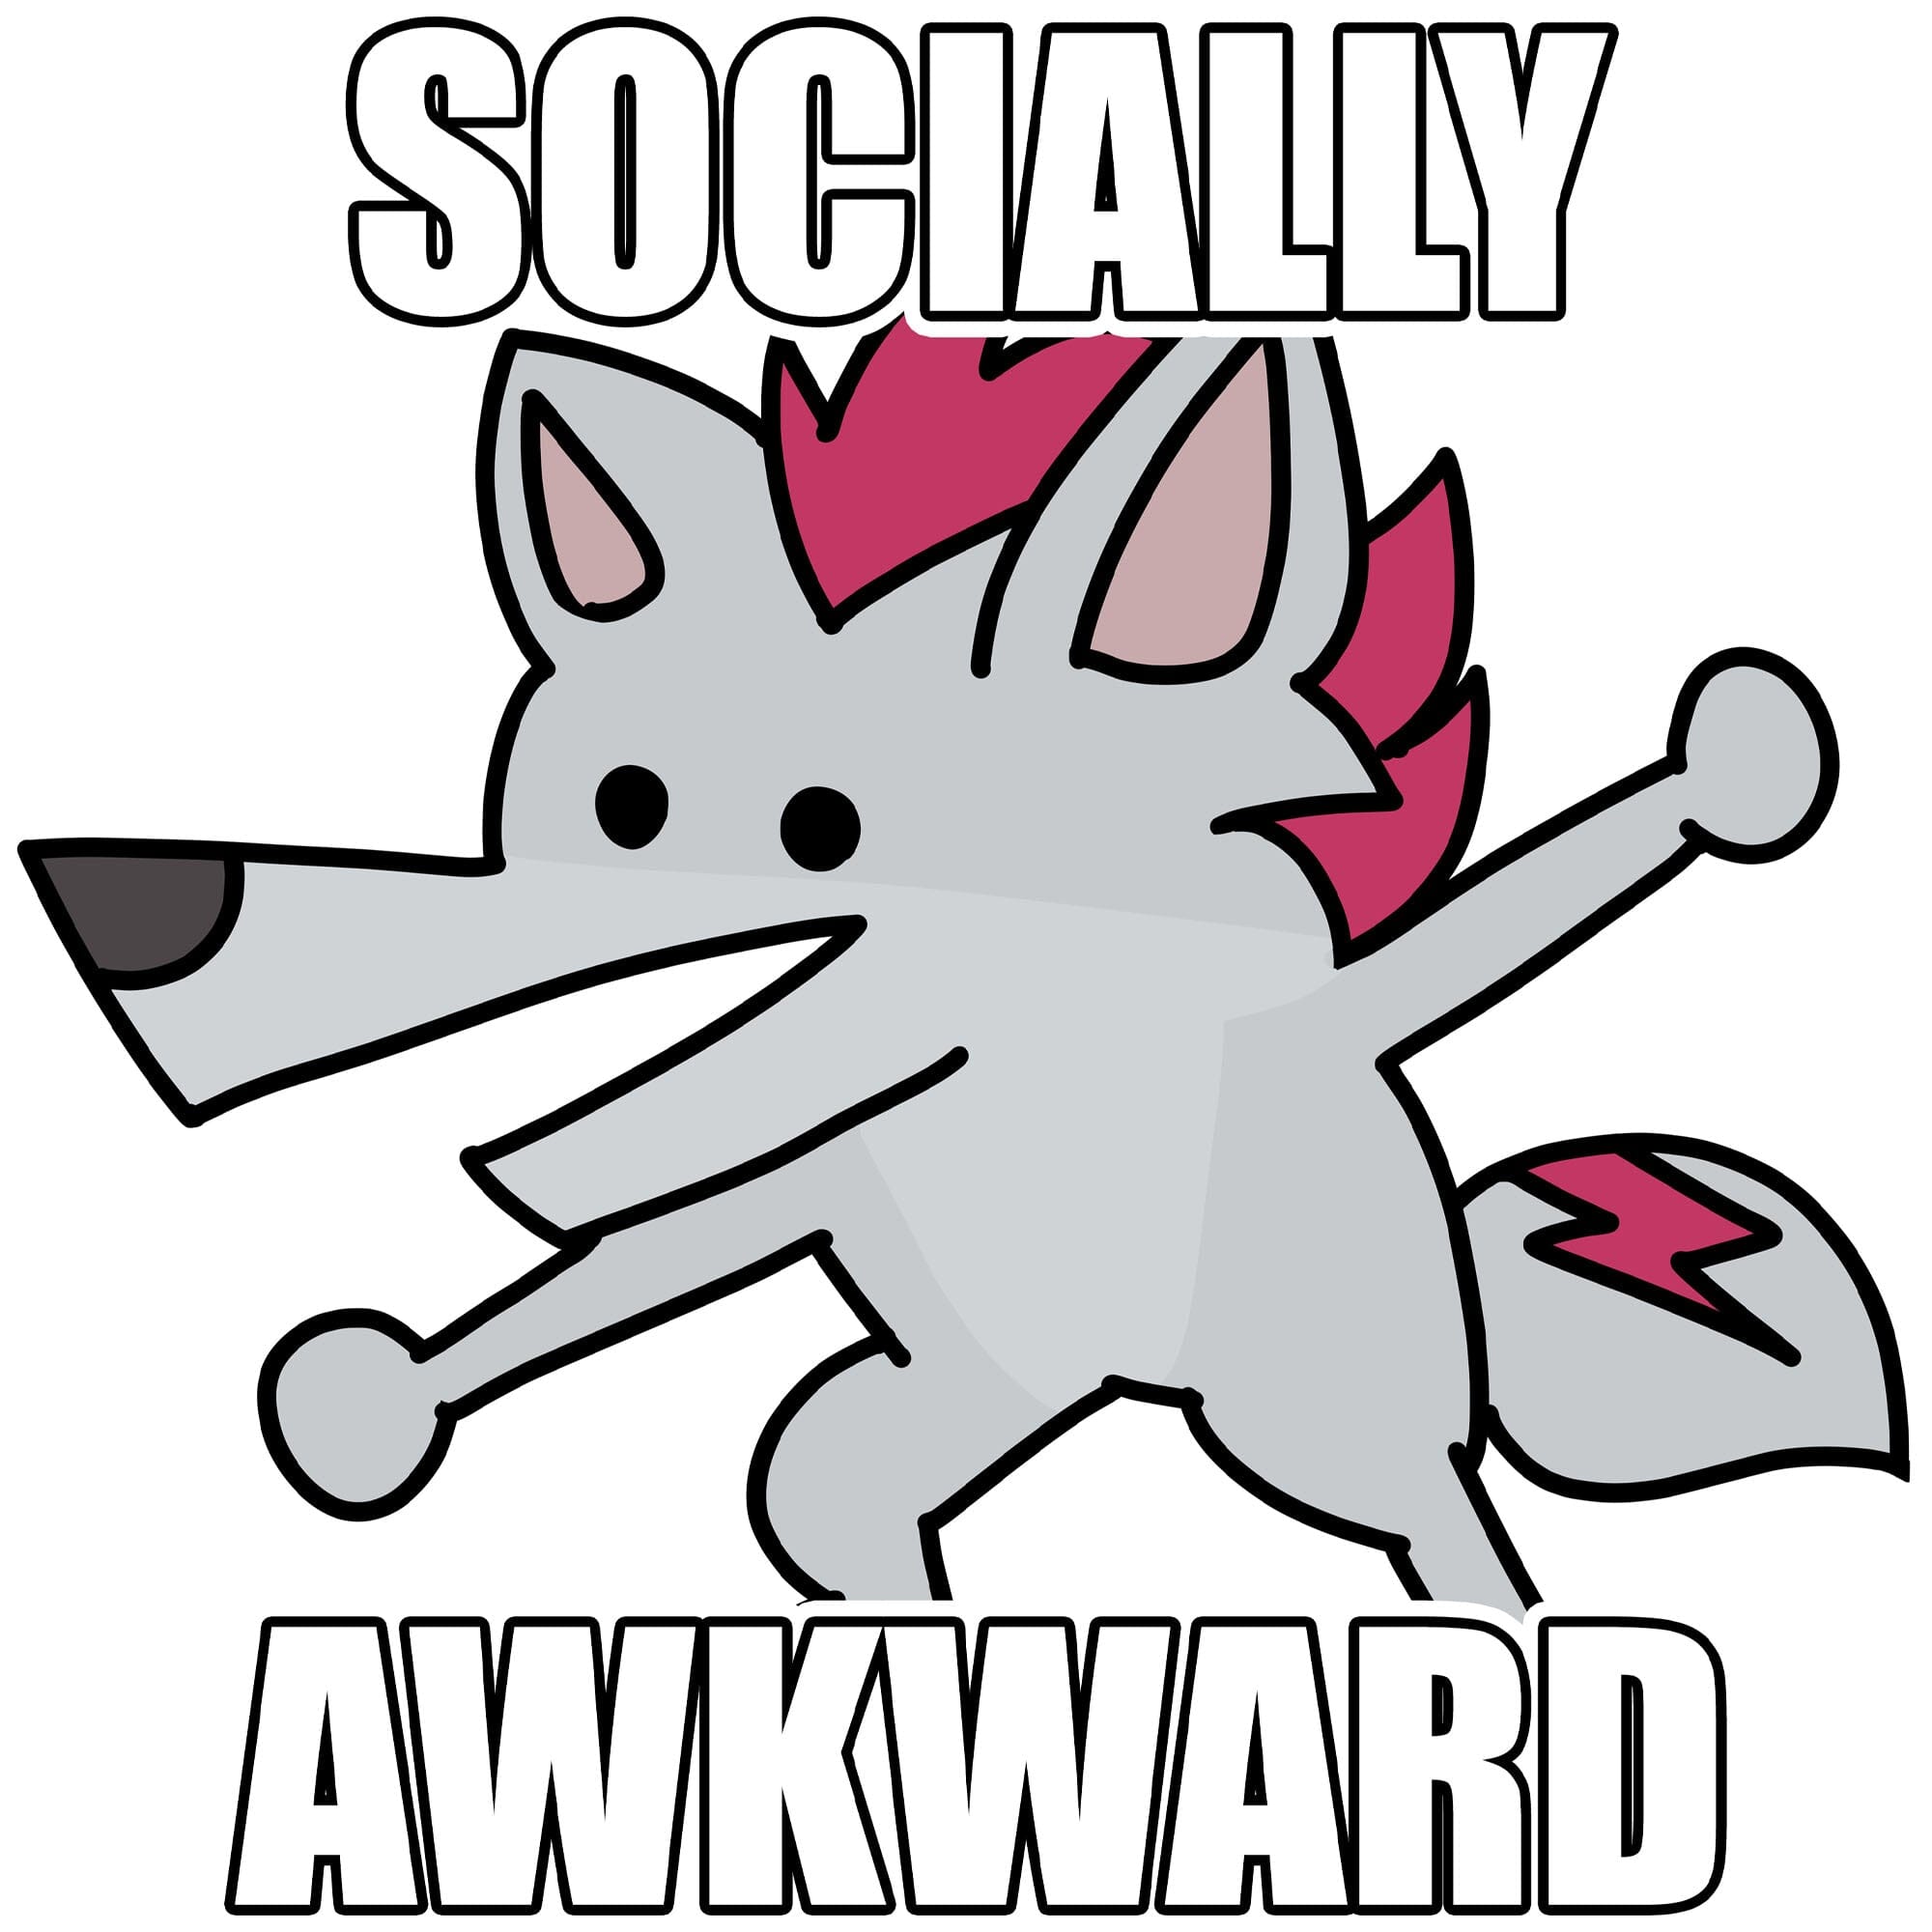 Shreddyfox - Socially Awkward Shreddyfox